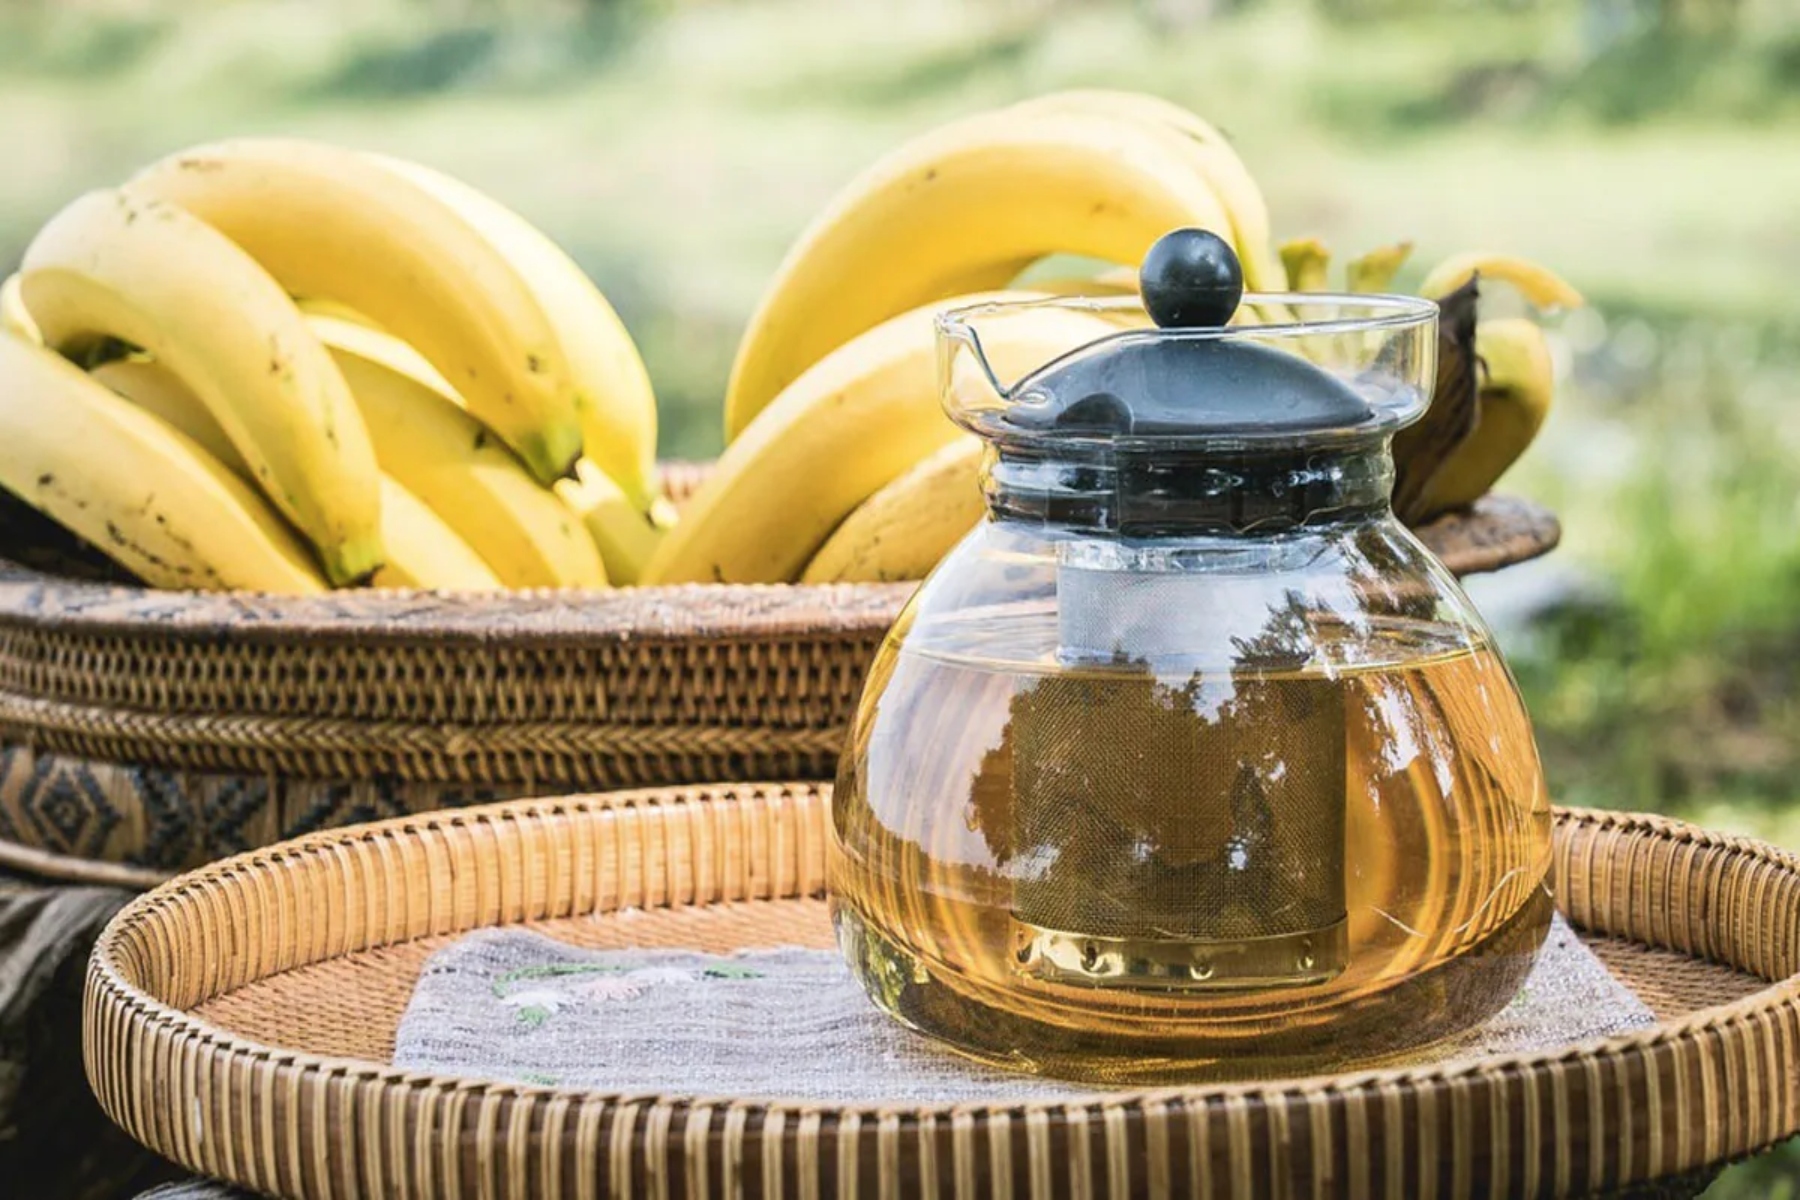 Τσάι μπανάνα: Θα δοκιμάζατε ποτέ υγιεινό τσάι από μπανάνα;